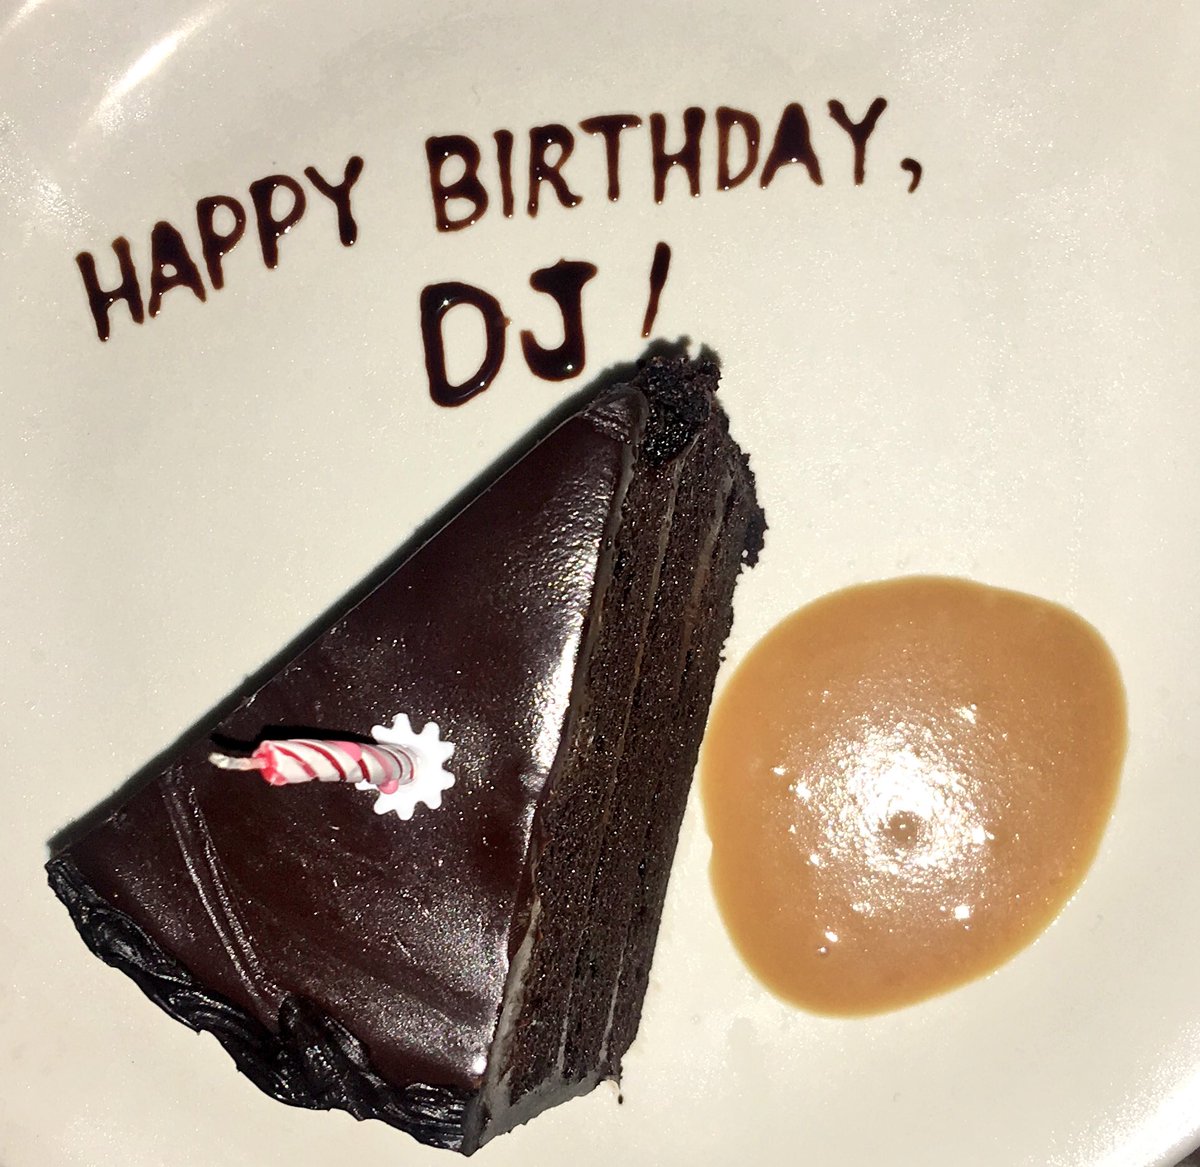 Happy Birthday, Dj! " @imdanielpadilla.